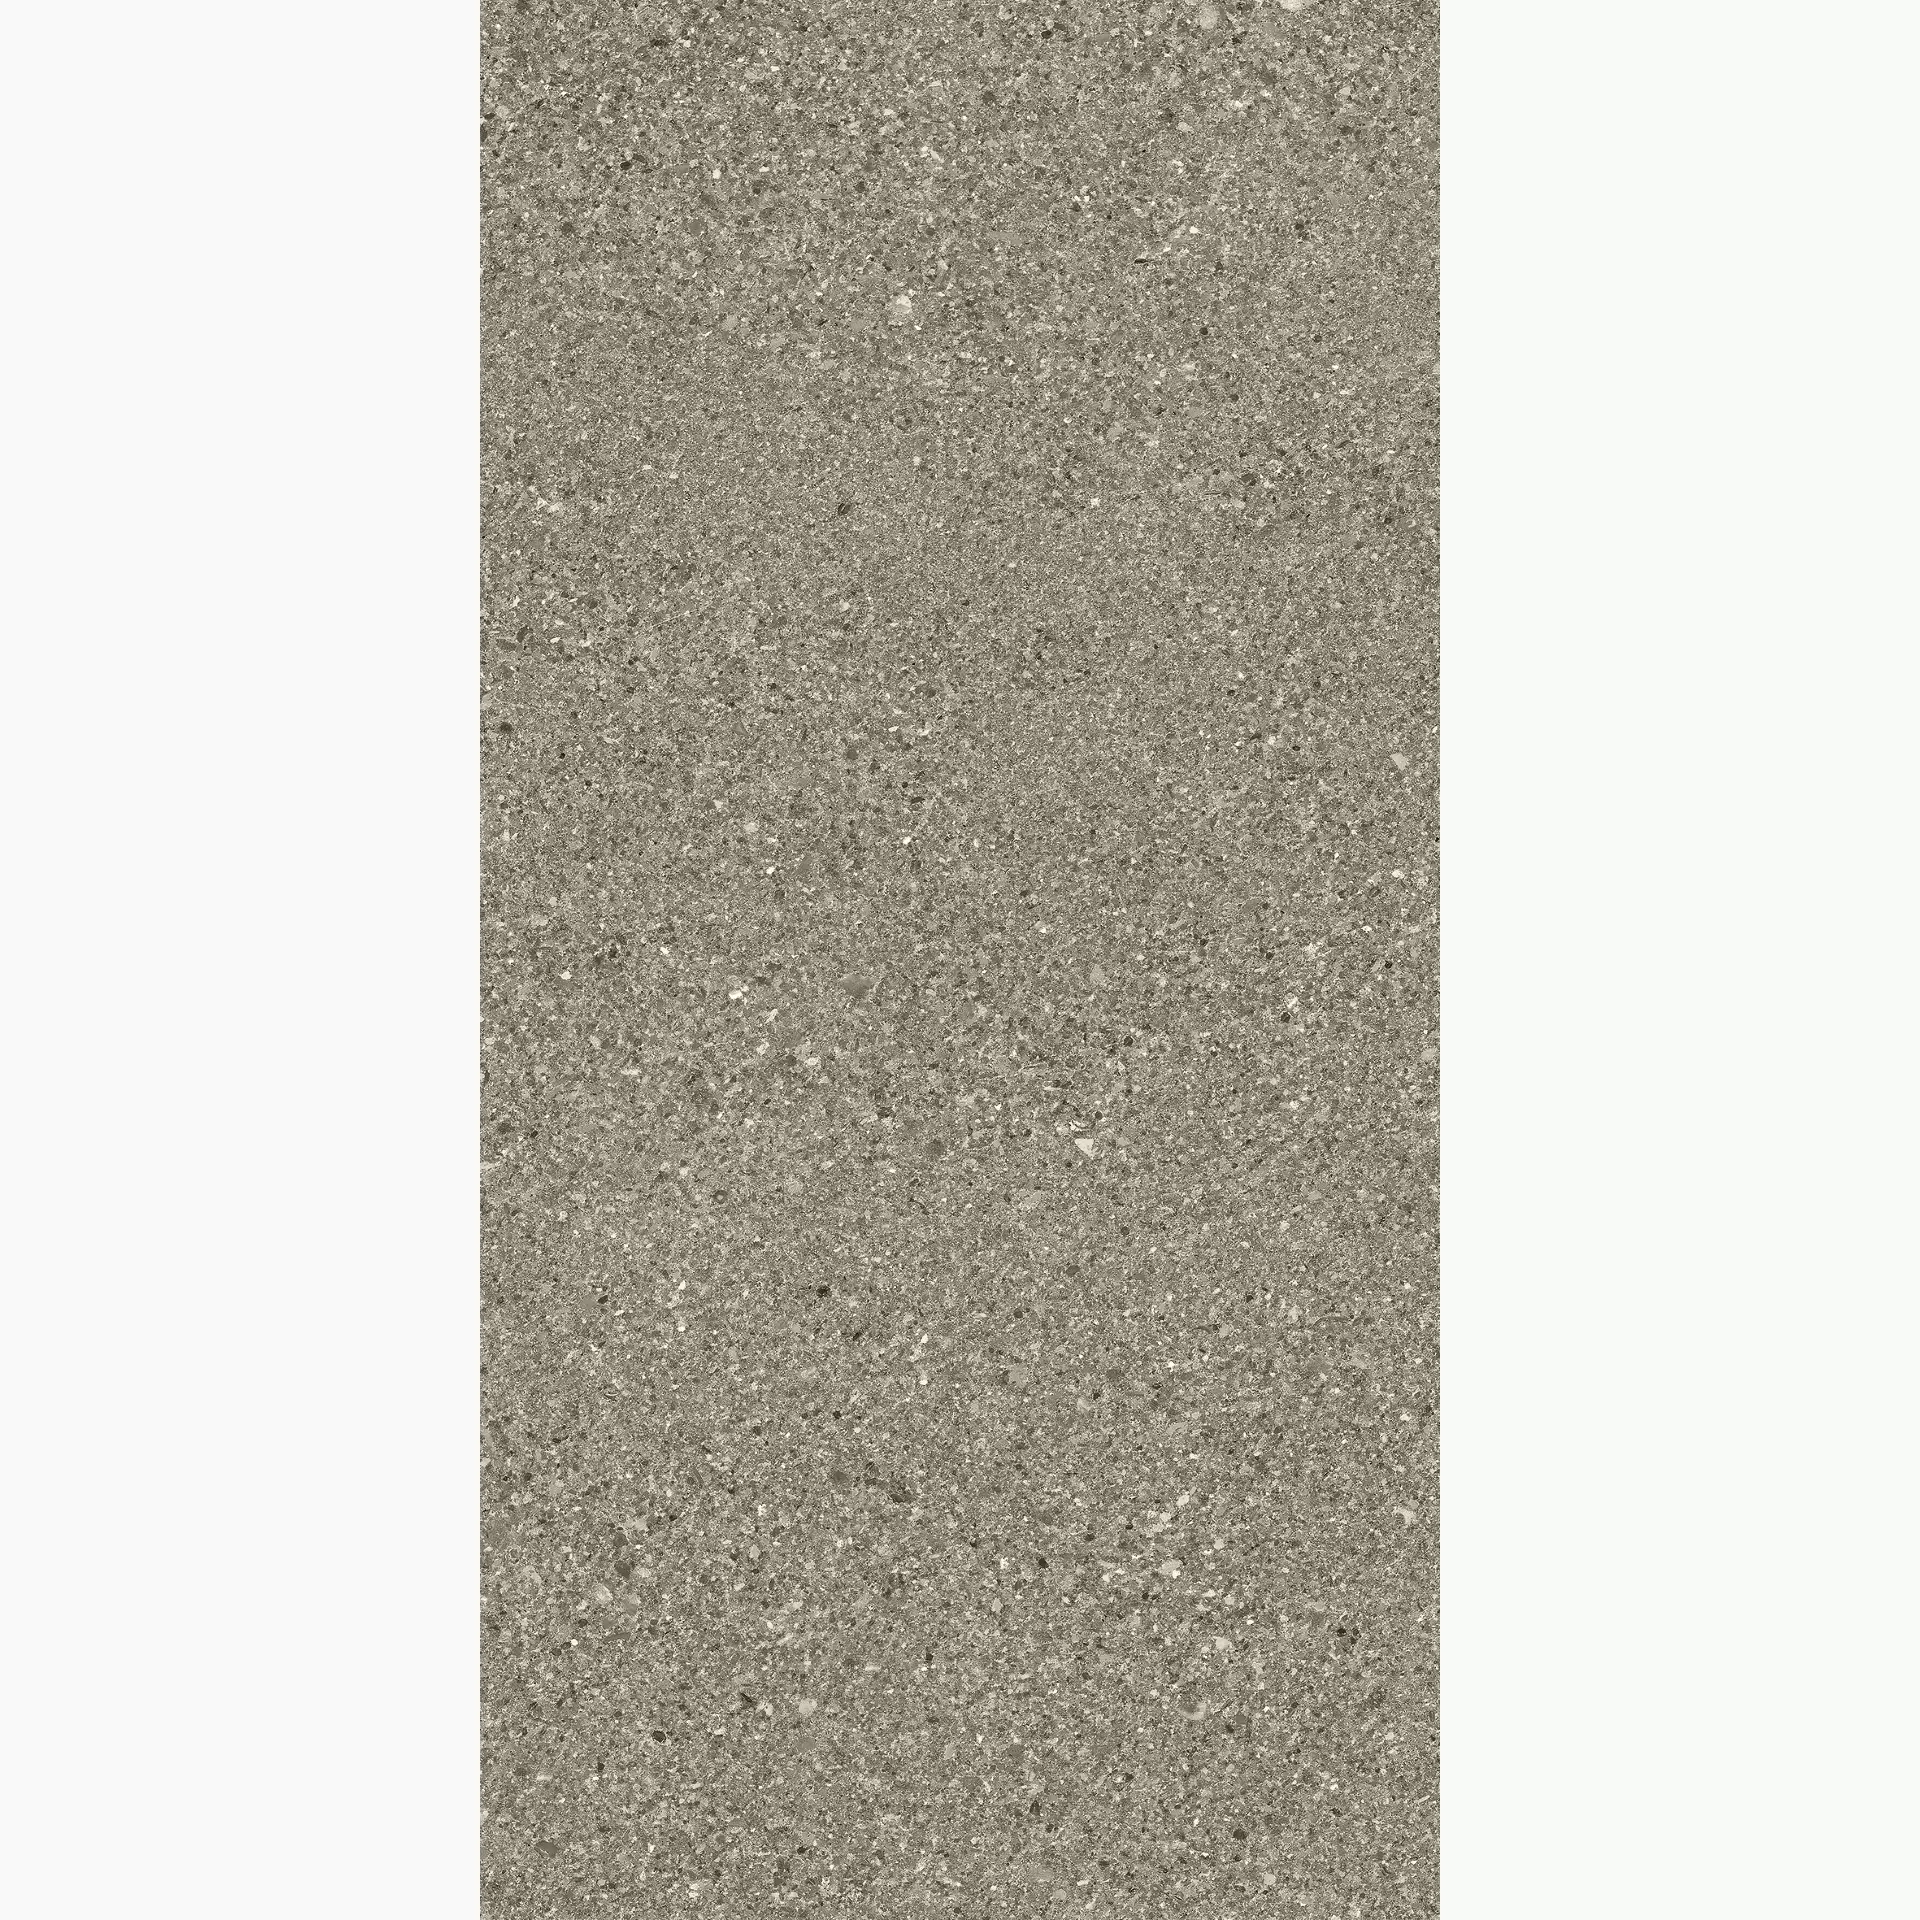 Ergon Grain Stone Fine Grain Taupe Naturale E09U 30x60cm rectified 9,5mm